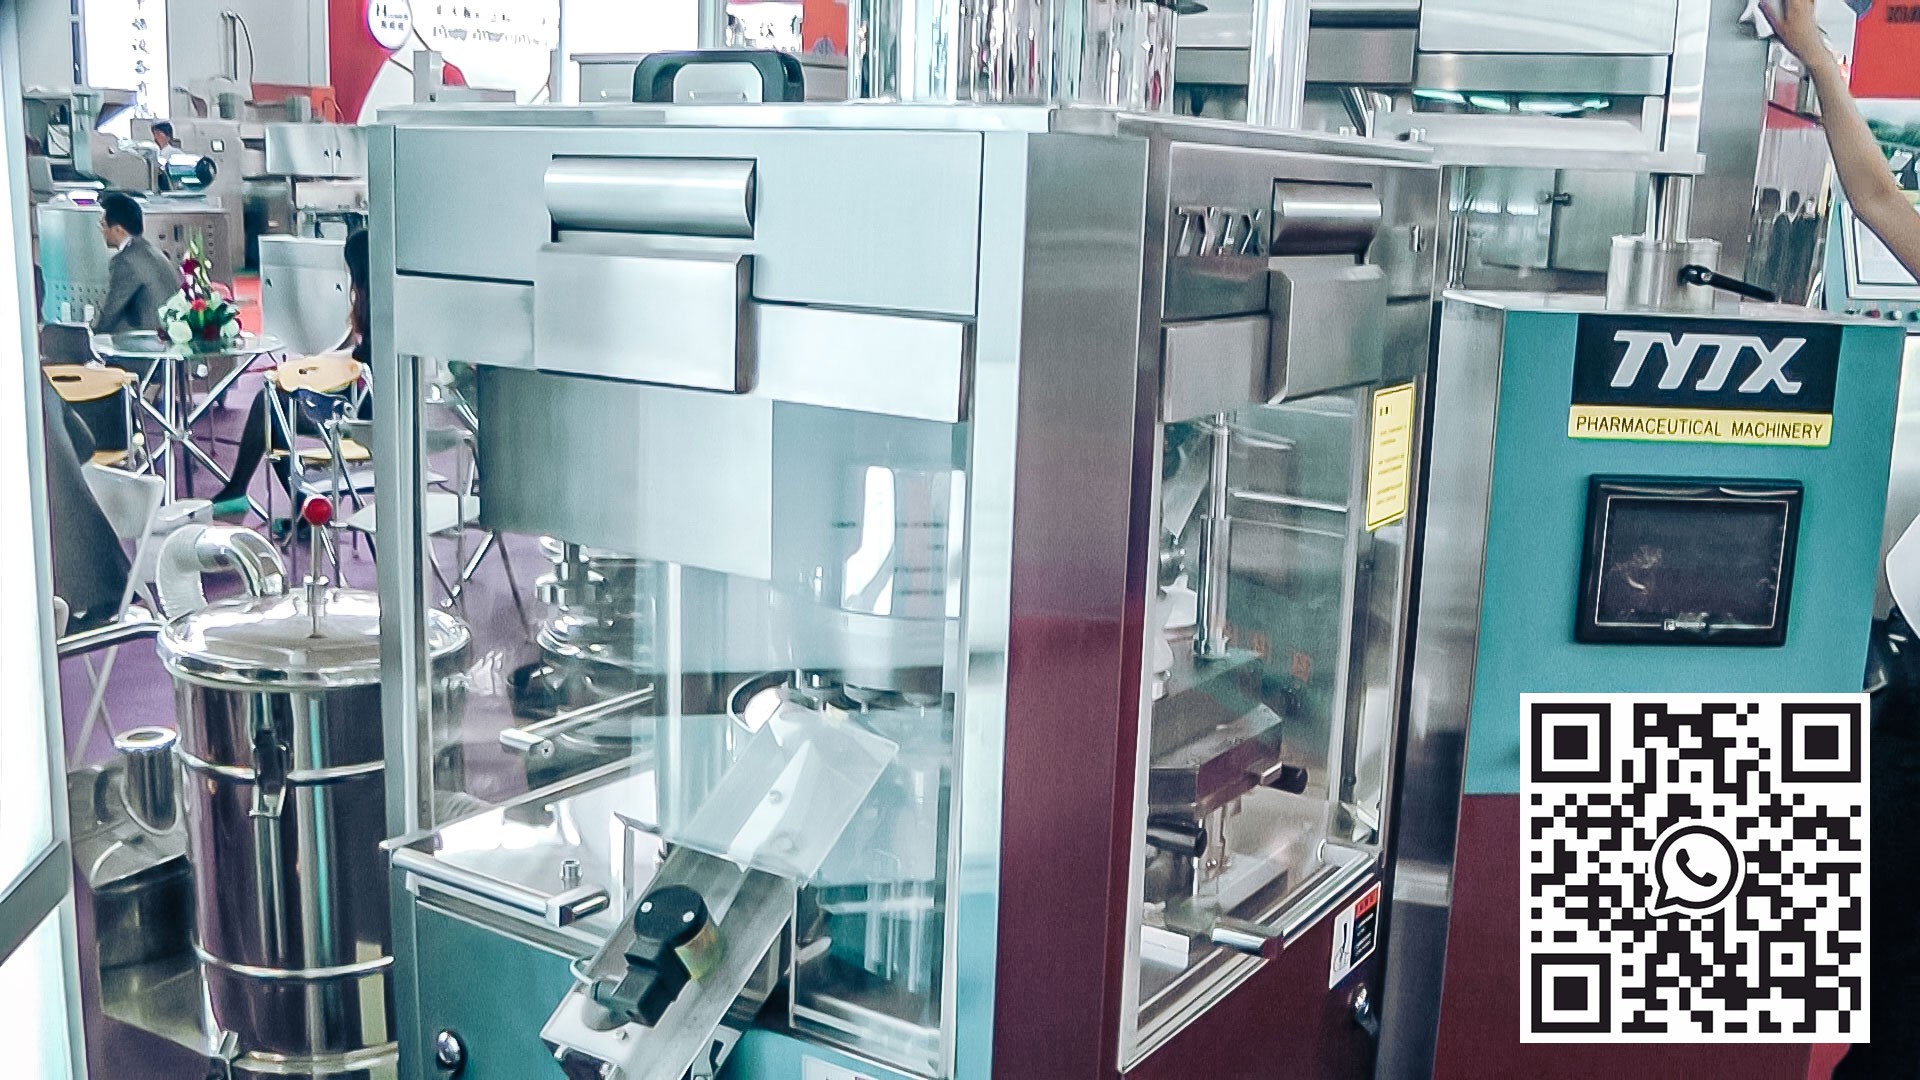 Equipo automático para la producción de comprimidos y desempolvado en la producción farmacéutica europea